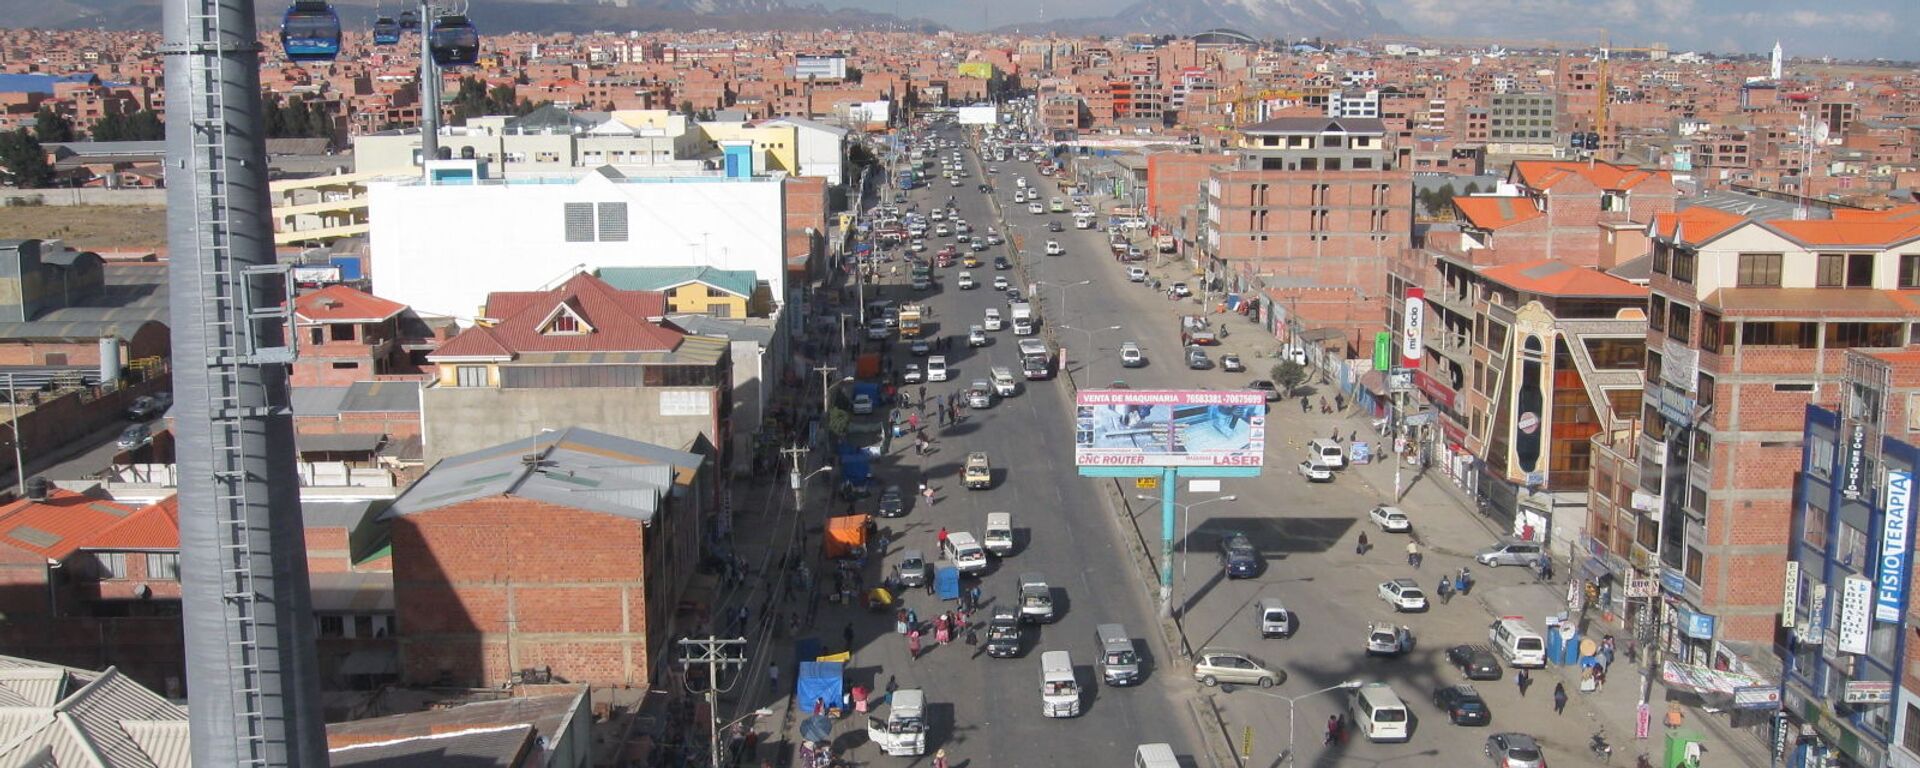 Una vista aérea de El Alto, Bolivia - Sputnik Mundo, 1920, 06.03.2021